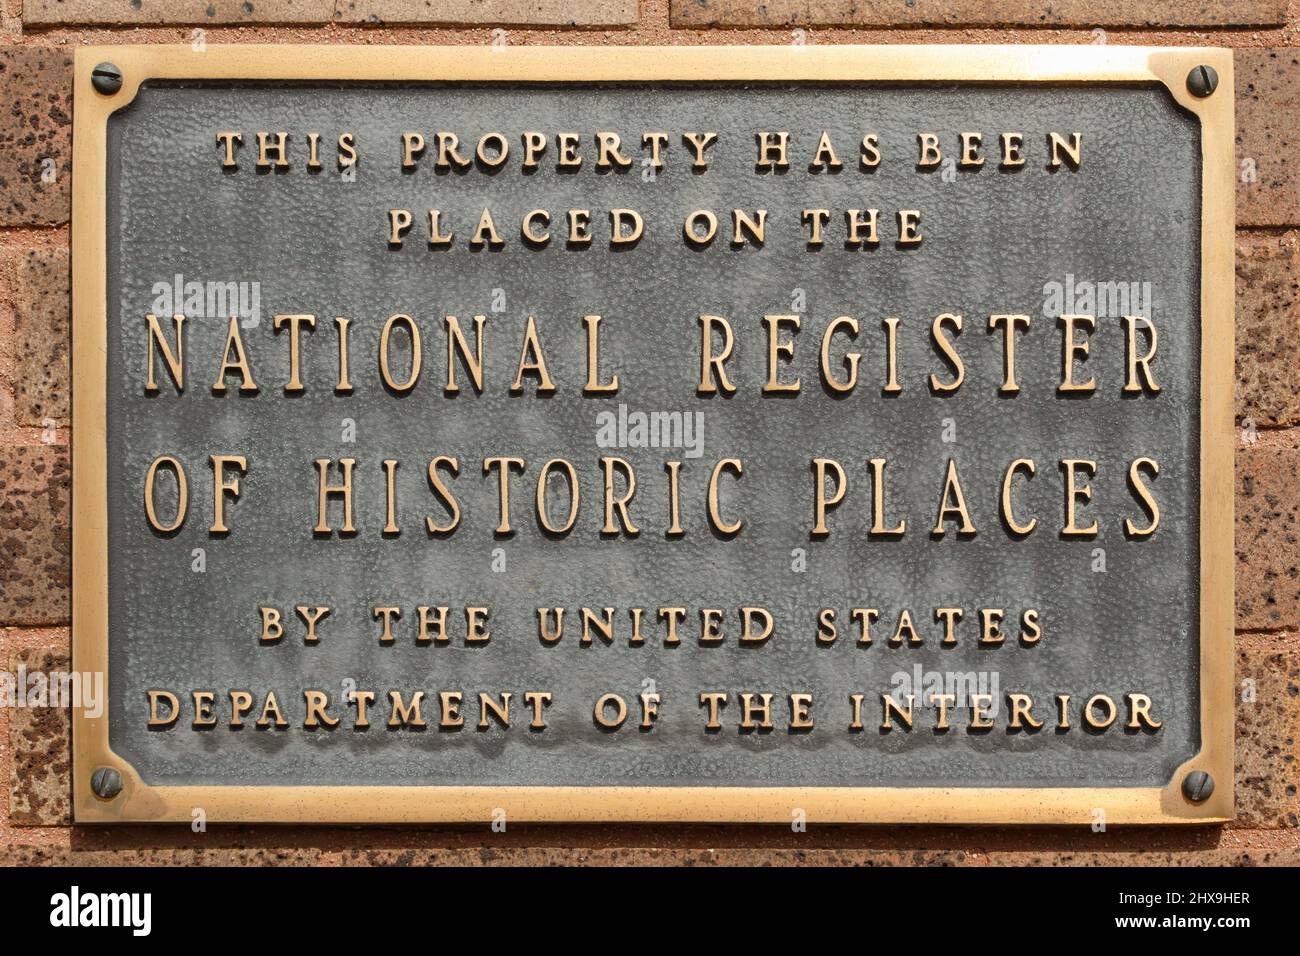 Plakette für das nationale Register historischer Stätten. Dieses Grundstück wurde von der United States DEPART in das National Registry of Historic Places aufgenommen Stockfoto